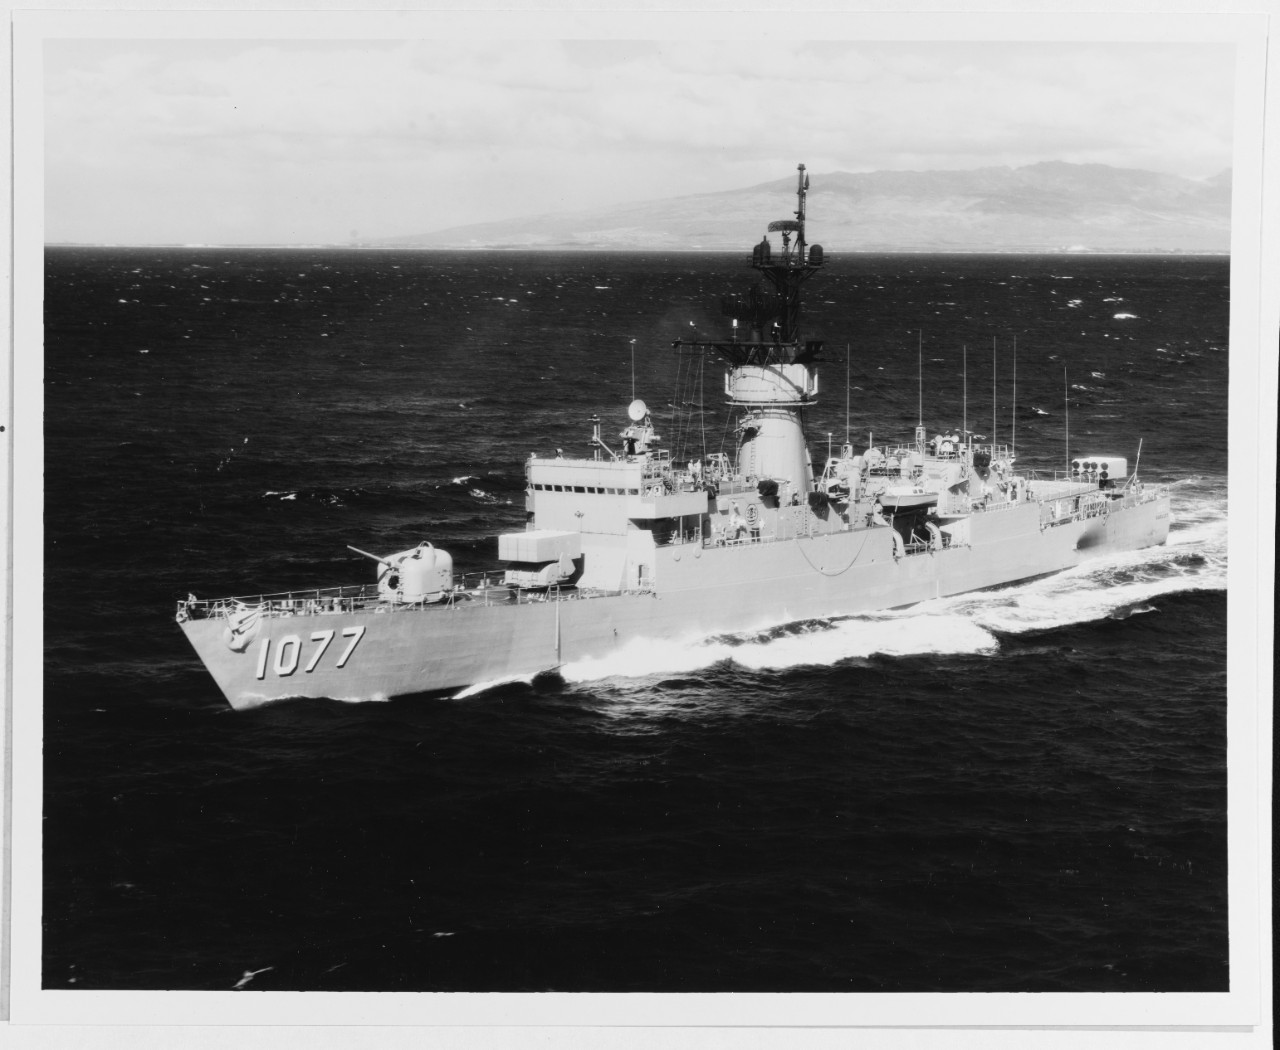 USS OUELLET (DE-1077)